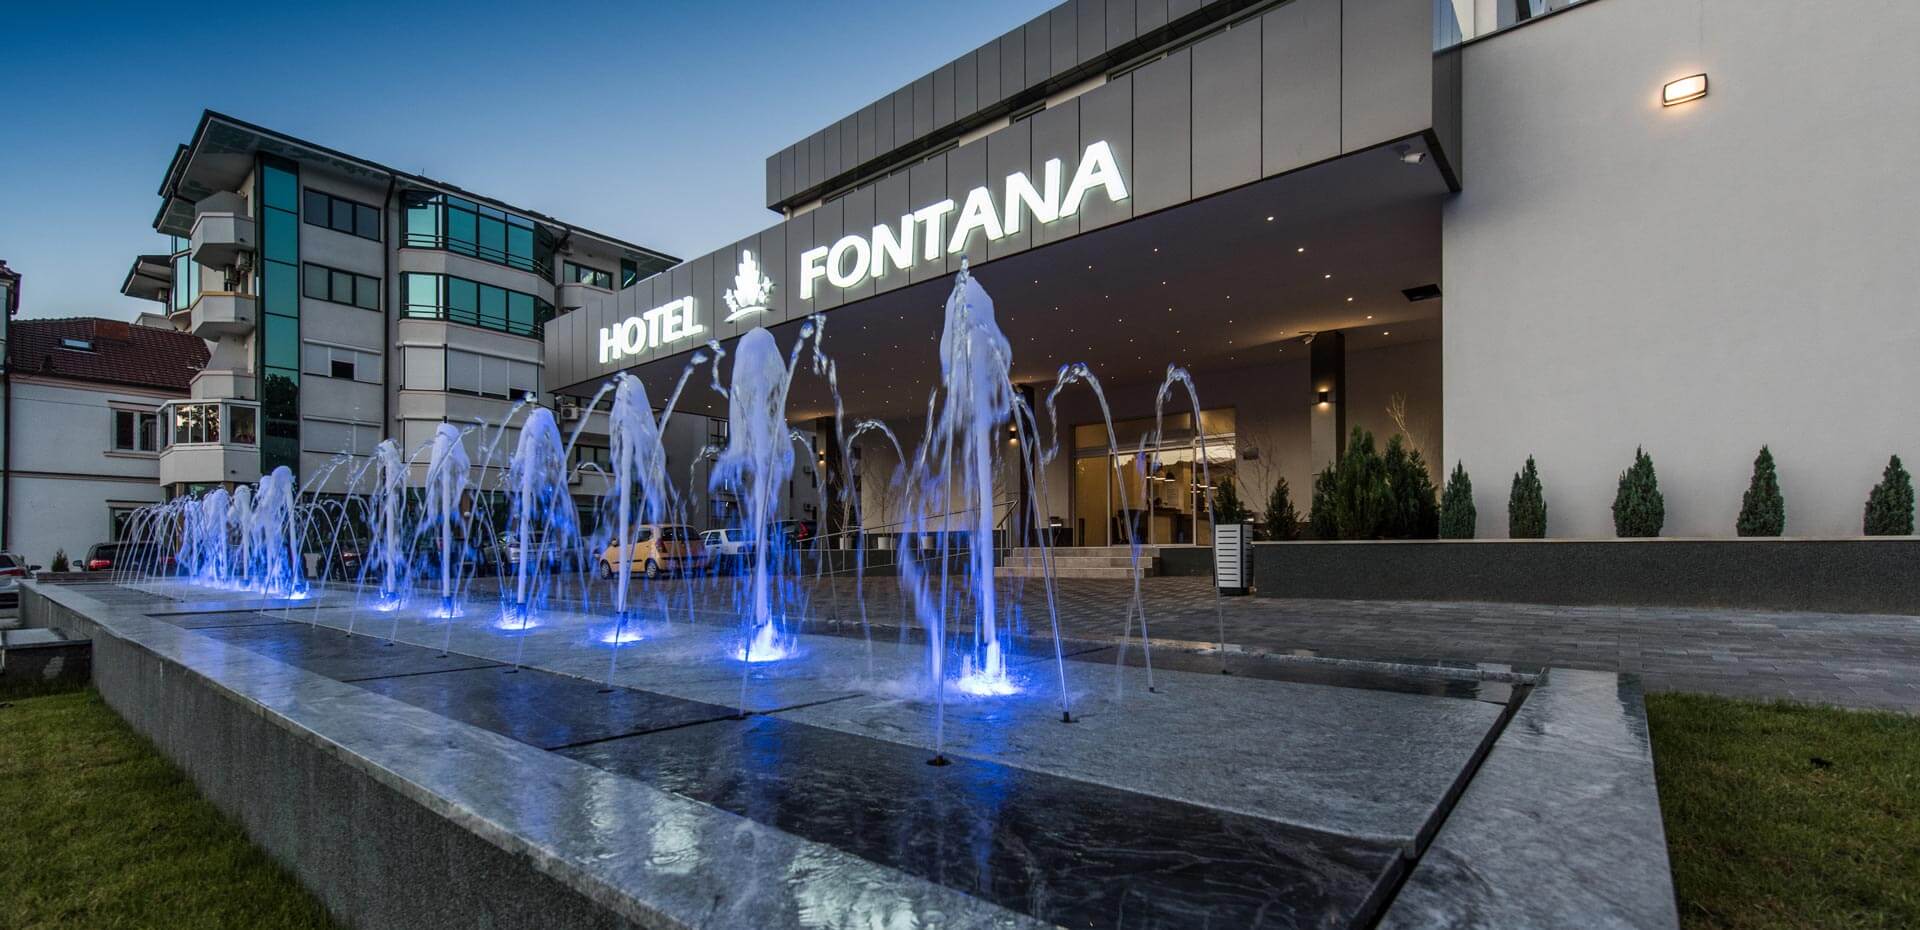 Hotel Fontana-Vrnjacka Banja-Jumbo Travel-spoljasnost